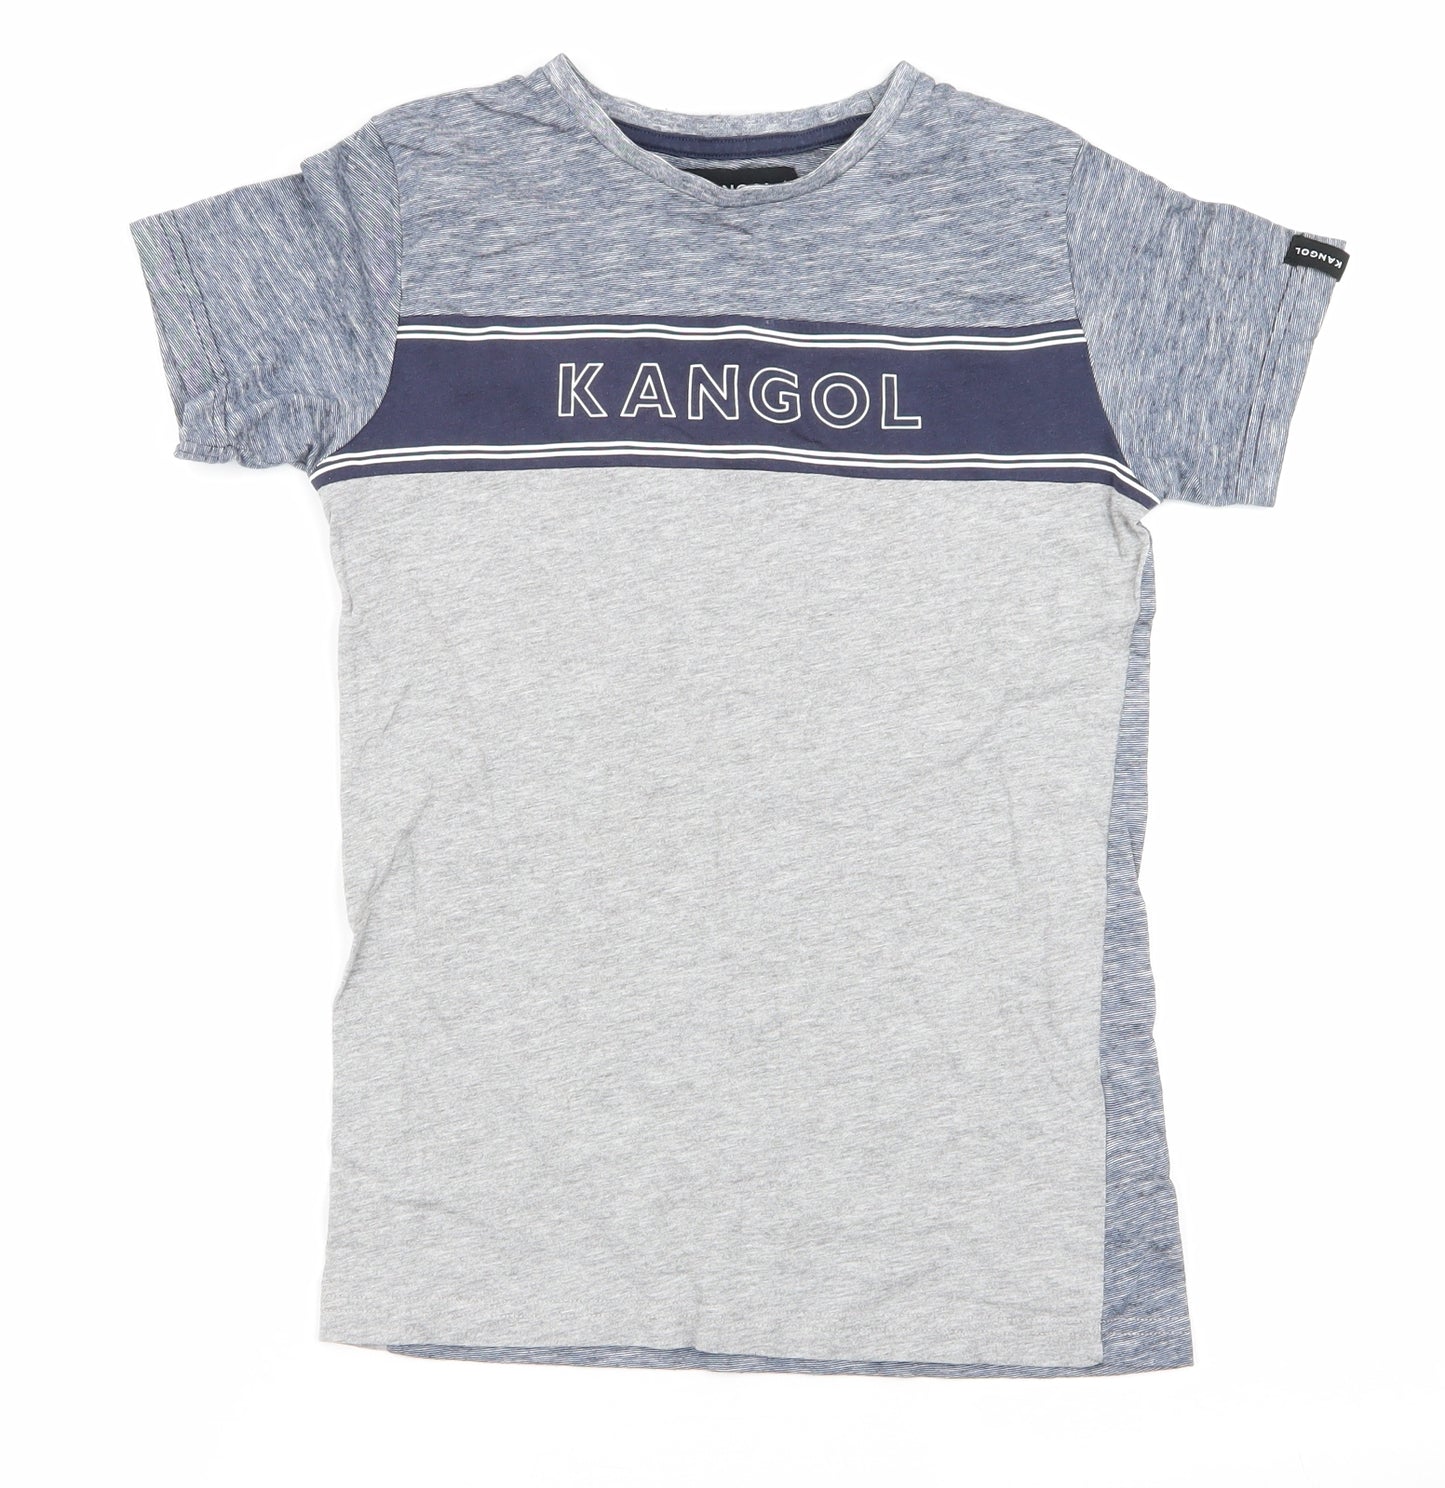 Kangol Boys Multicoloured   Basic T-Shirt Size 9-10 Years